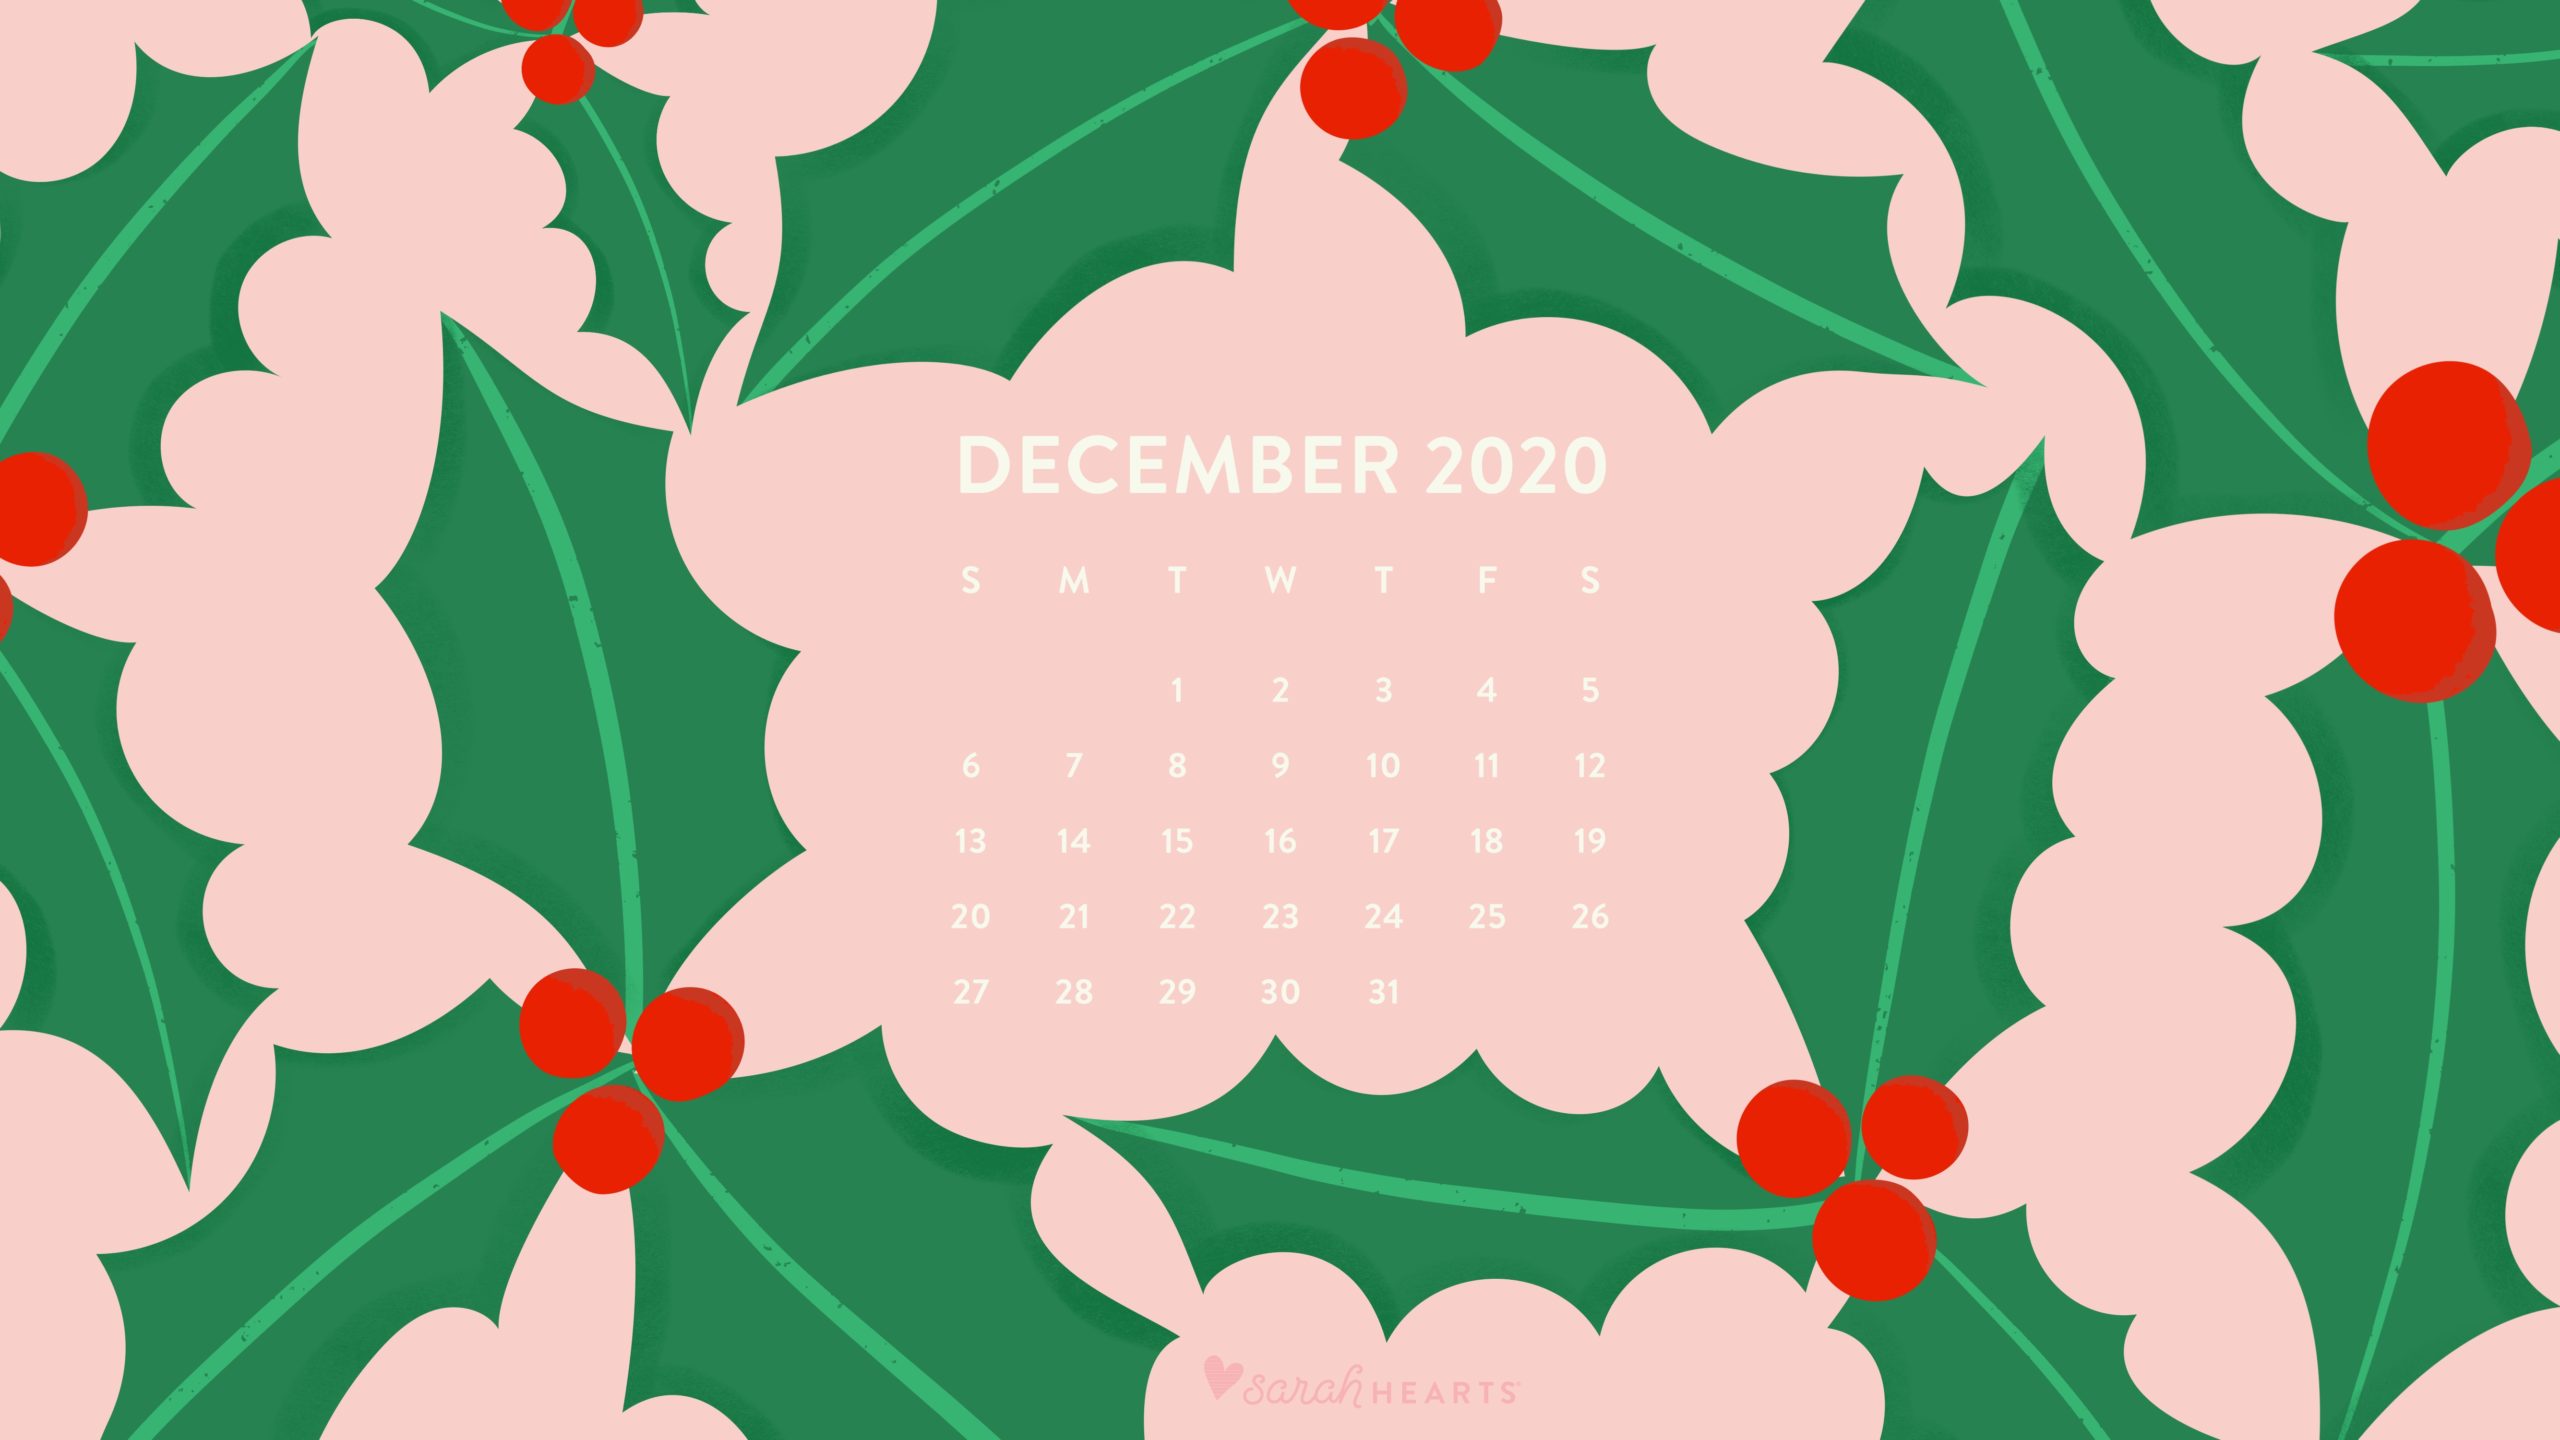 December 2020 Calendar Wallpapers